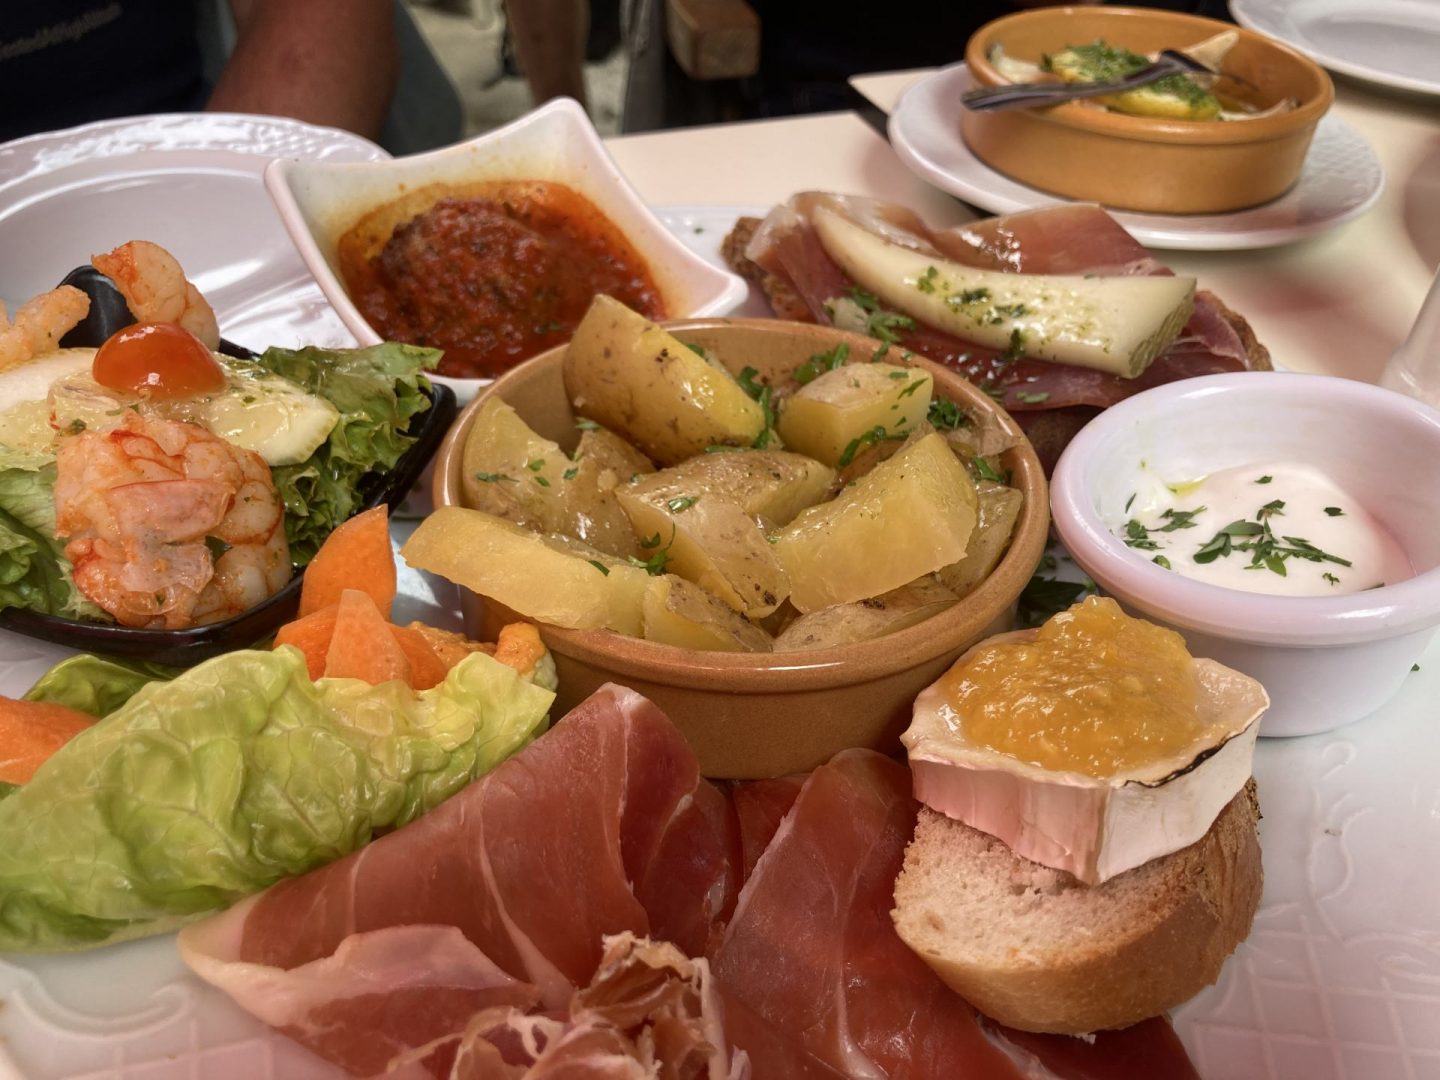 Erfahrung Bewertung Kritik Bar Coto Palma de Mallorca gemischte Tapas Foodblog Sternestulle